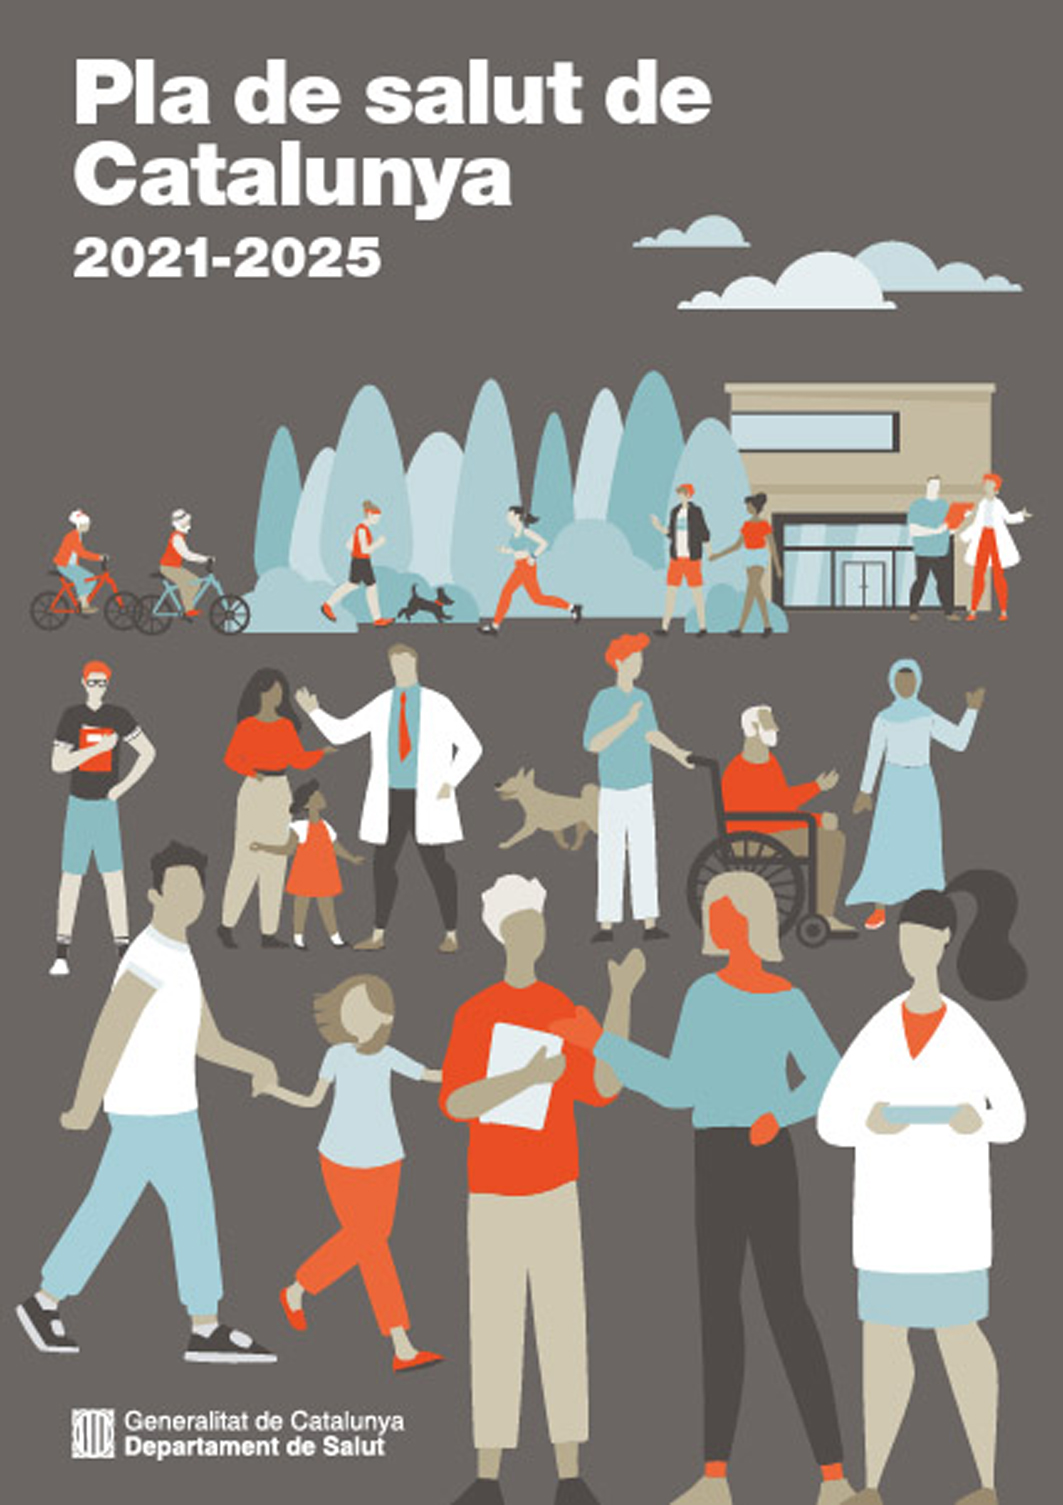 S'aproven els plans de salut territorials 2021-2025 